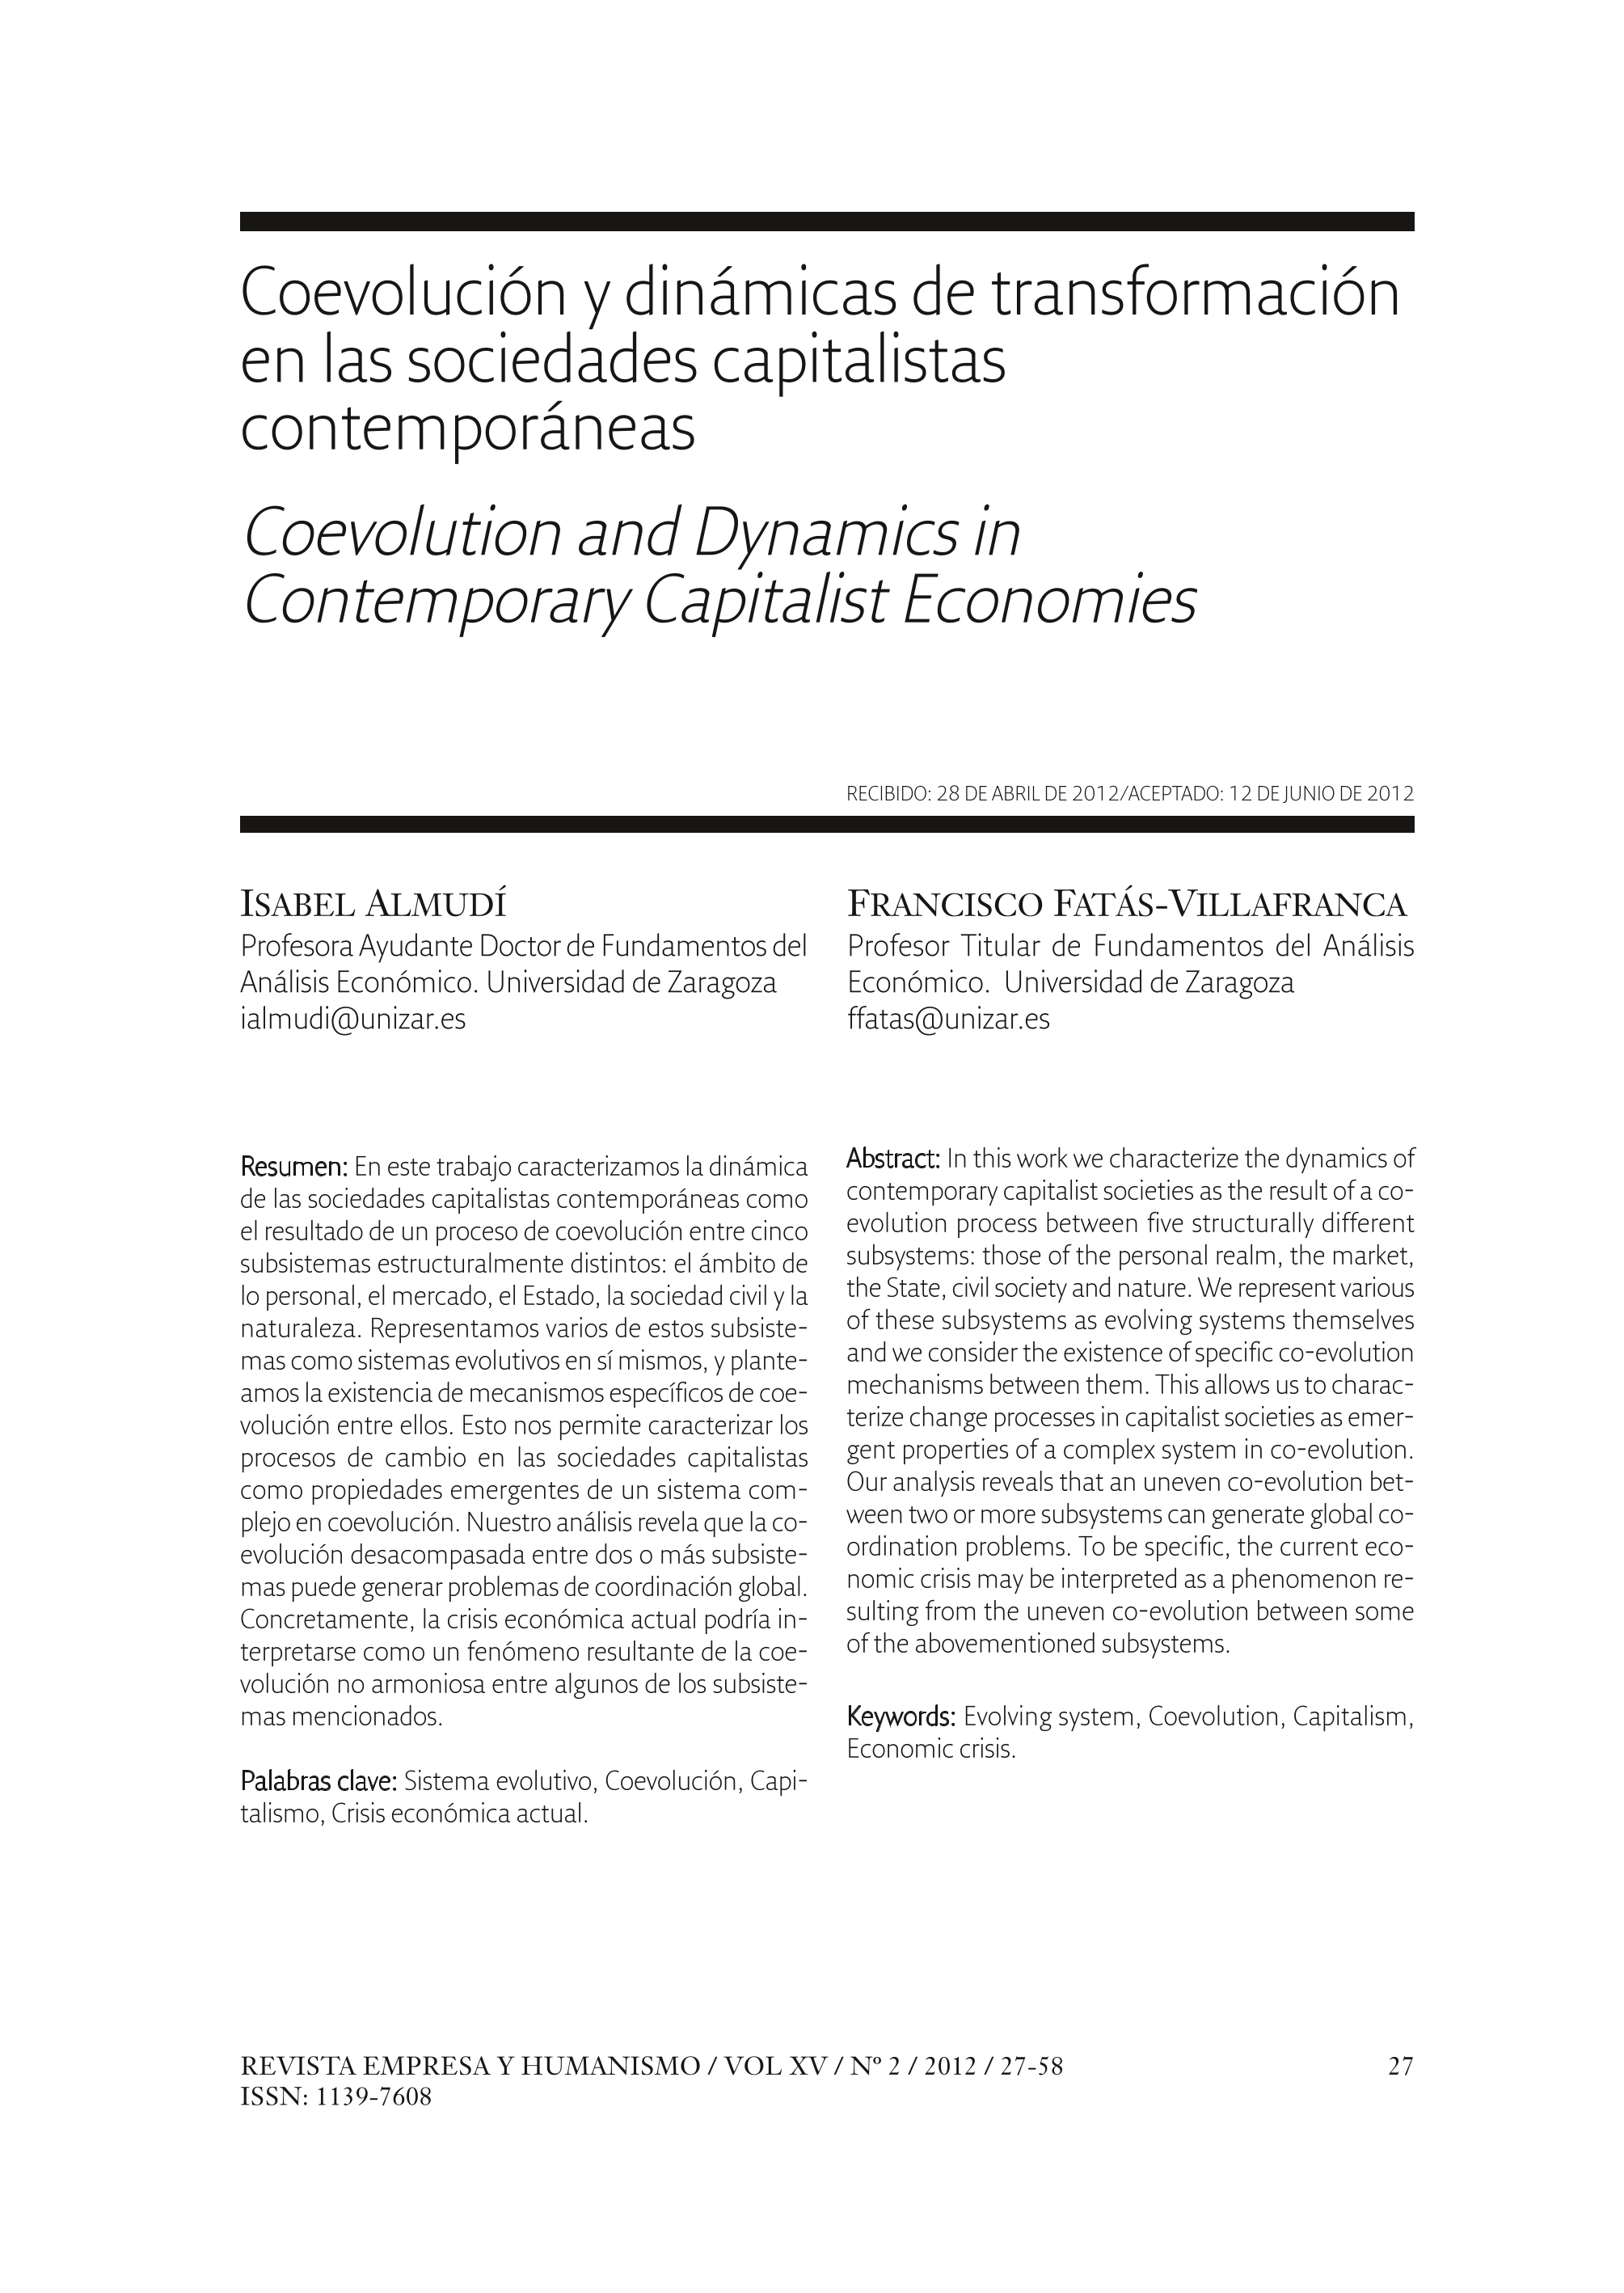 Coevolucion y dinamicas de transformacion en las sociedades capitalistas contemporáneas